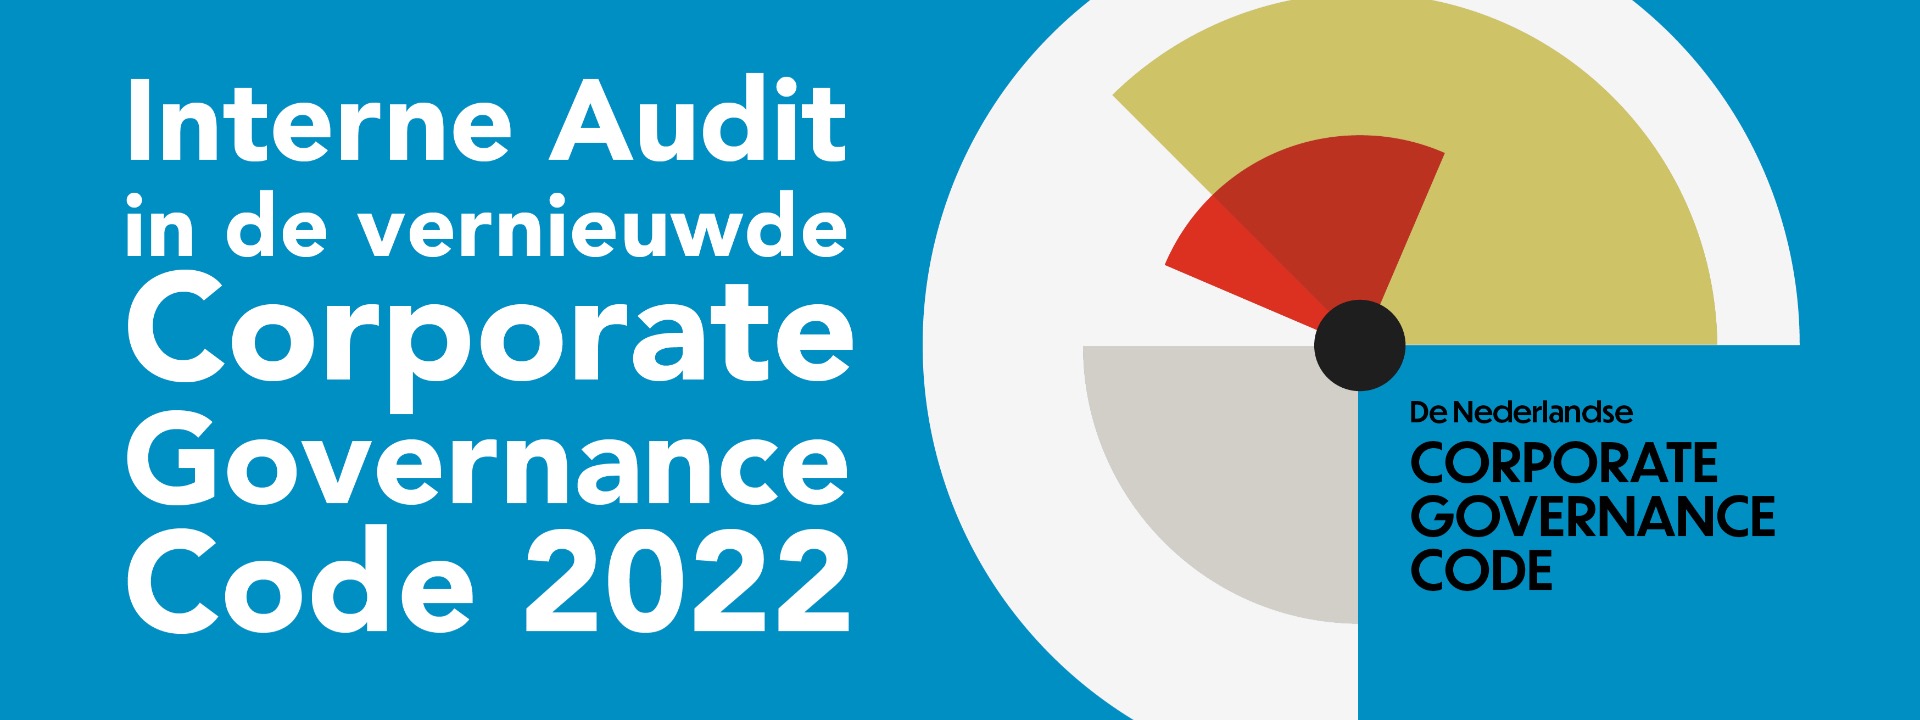 Interne Audit in de vernieuwde Corporate Governance Code 2022